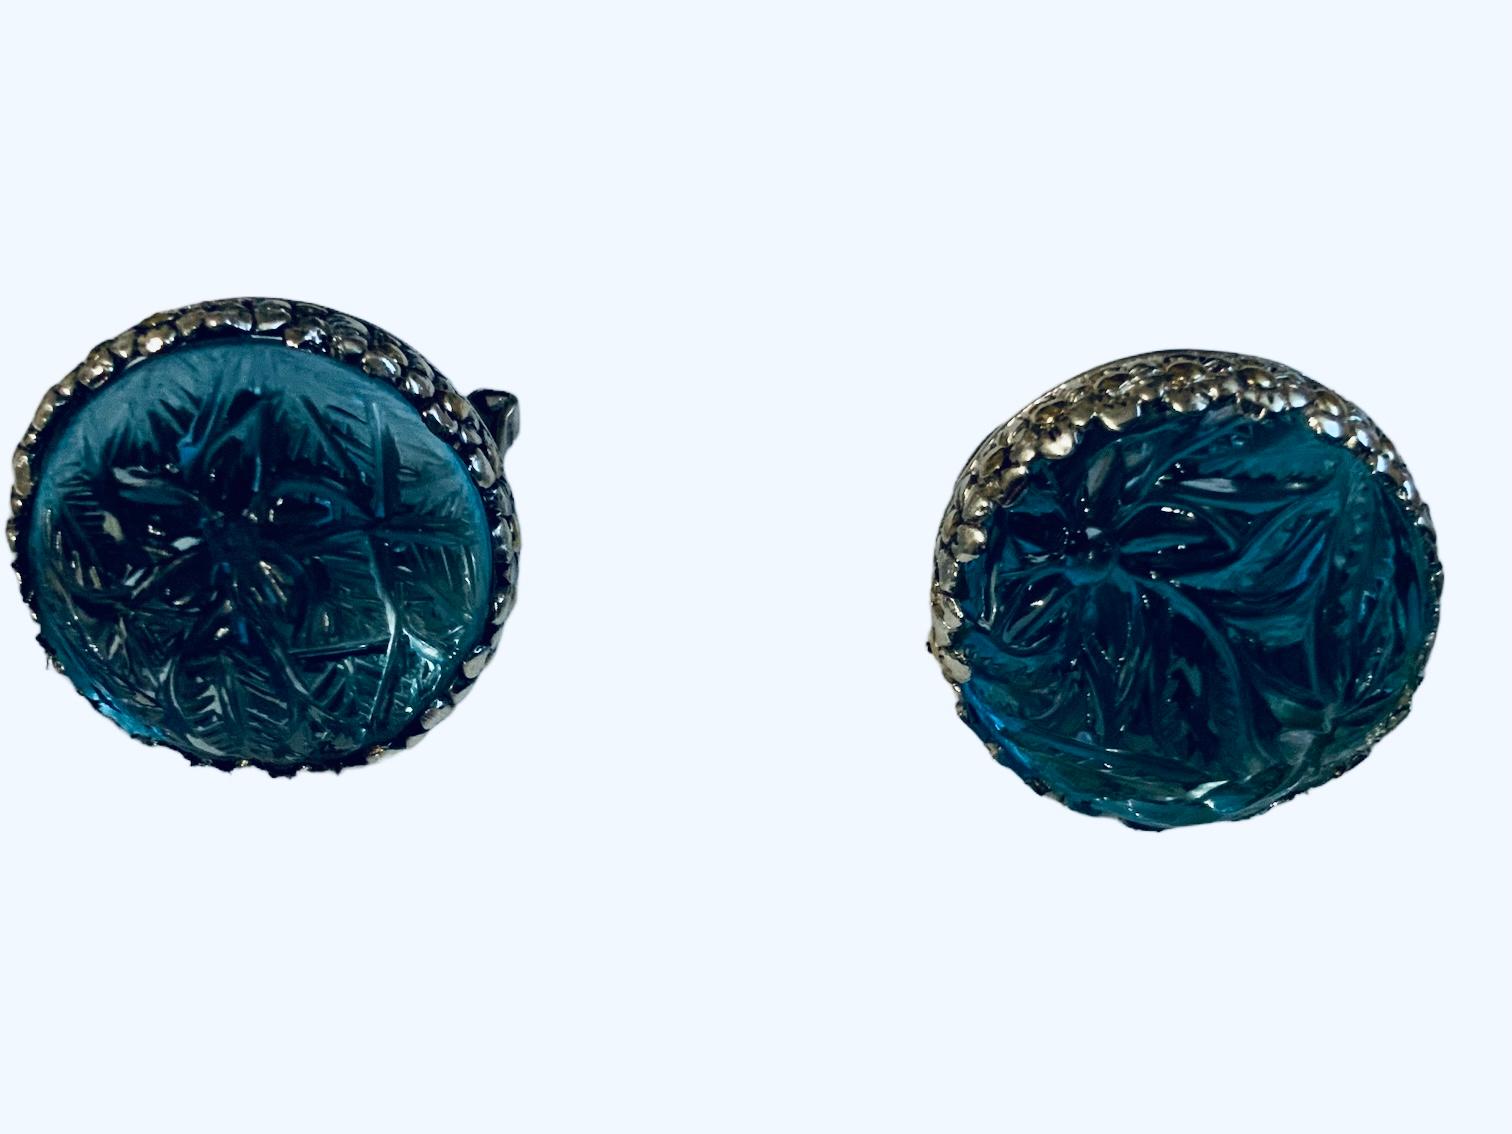 Dies ist ein Paar Ohrringe aus 18K Gold und 925 Sterling Silber Blautopas. Es zeigt ein Paar Ohrringe, bestehend aus einem hellblauen Topas runde Kuppel geschnitzt mit Zweigen von Blumen und Blättern montiert in 925 Sterling Lünette Einstellung. Die